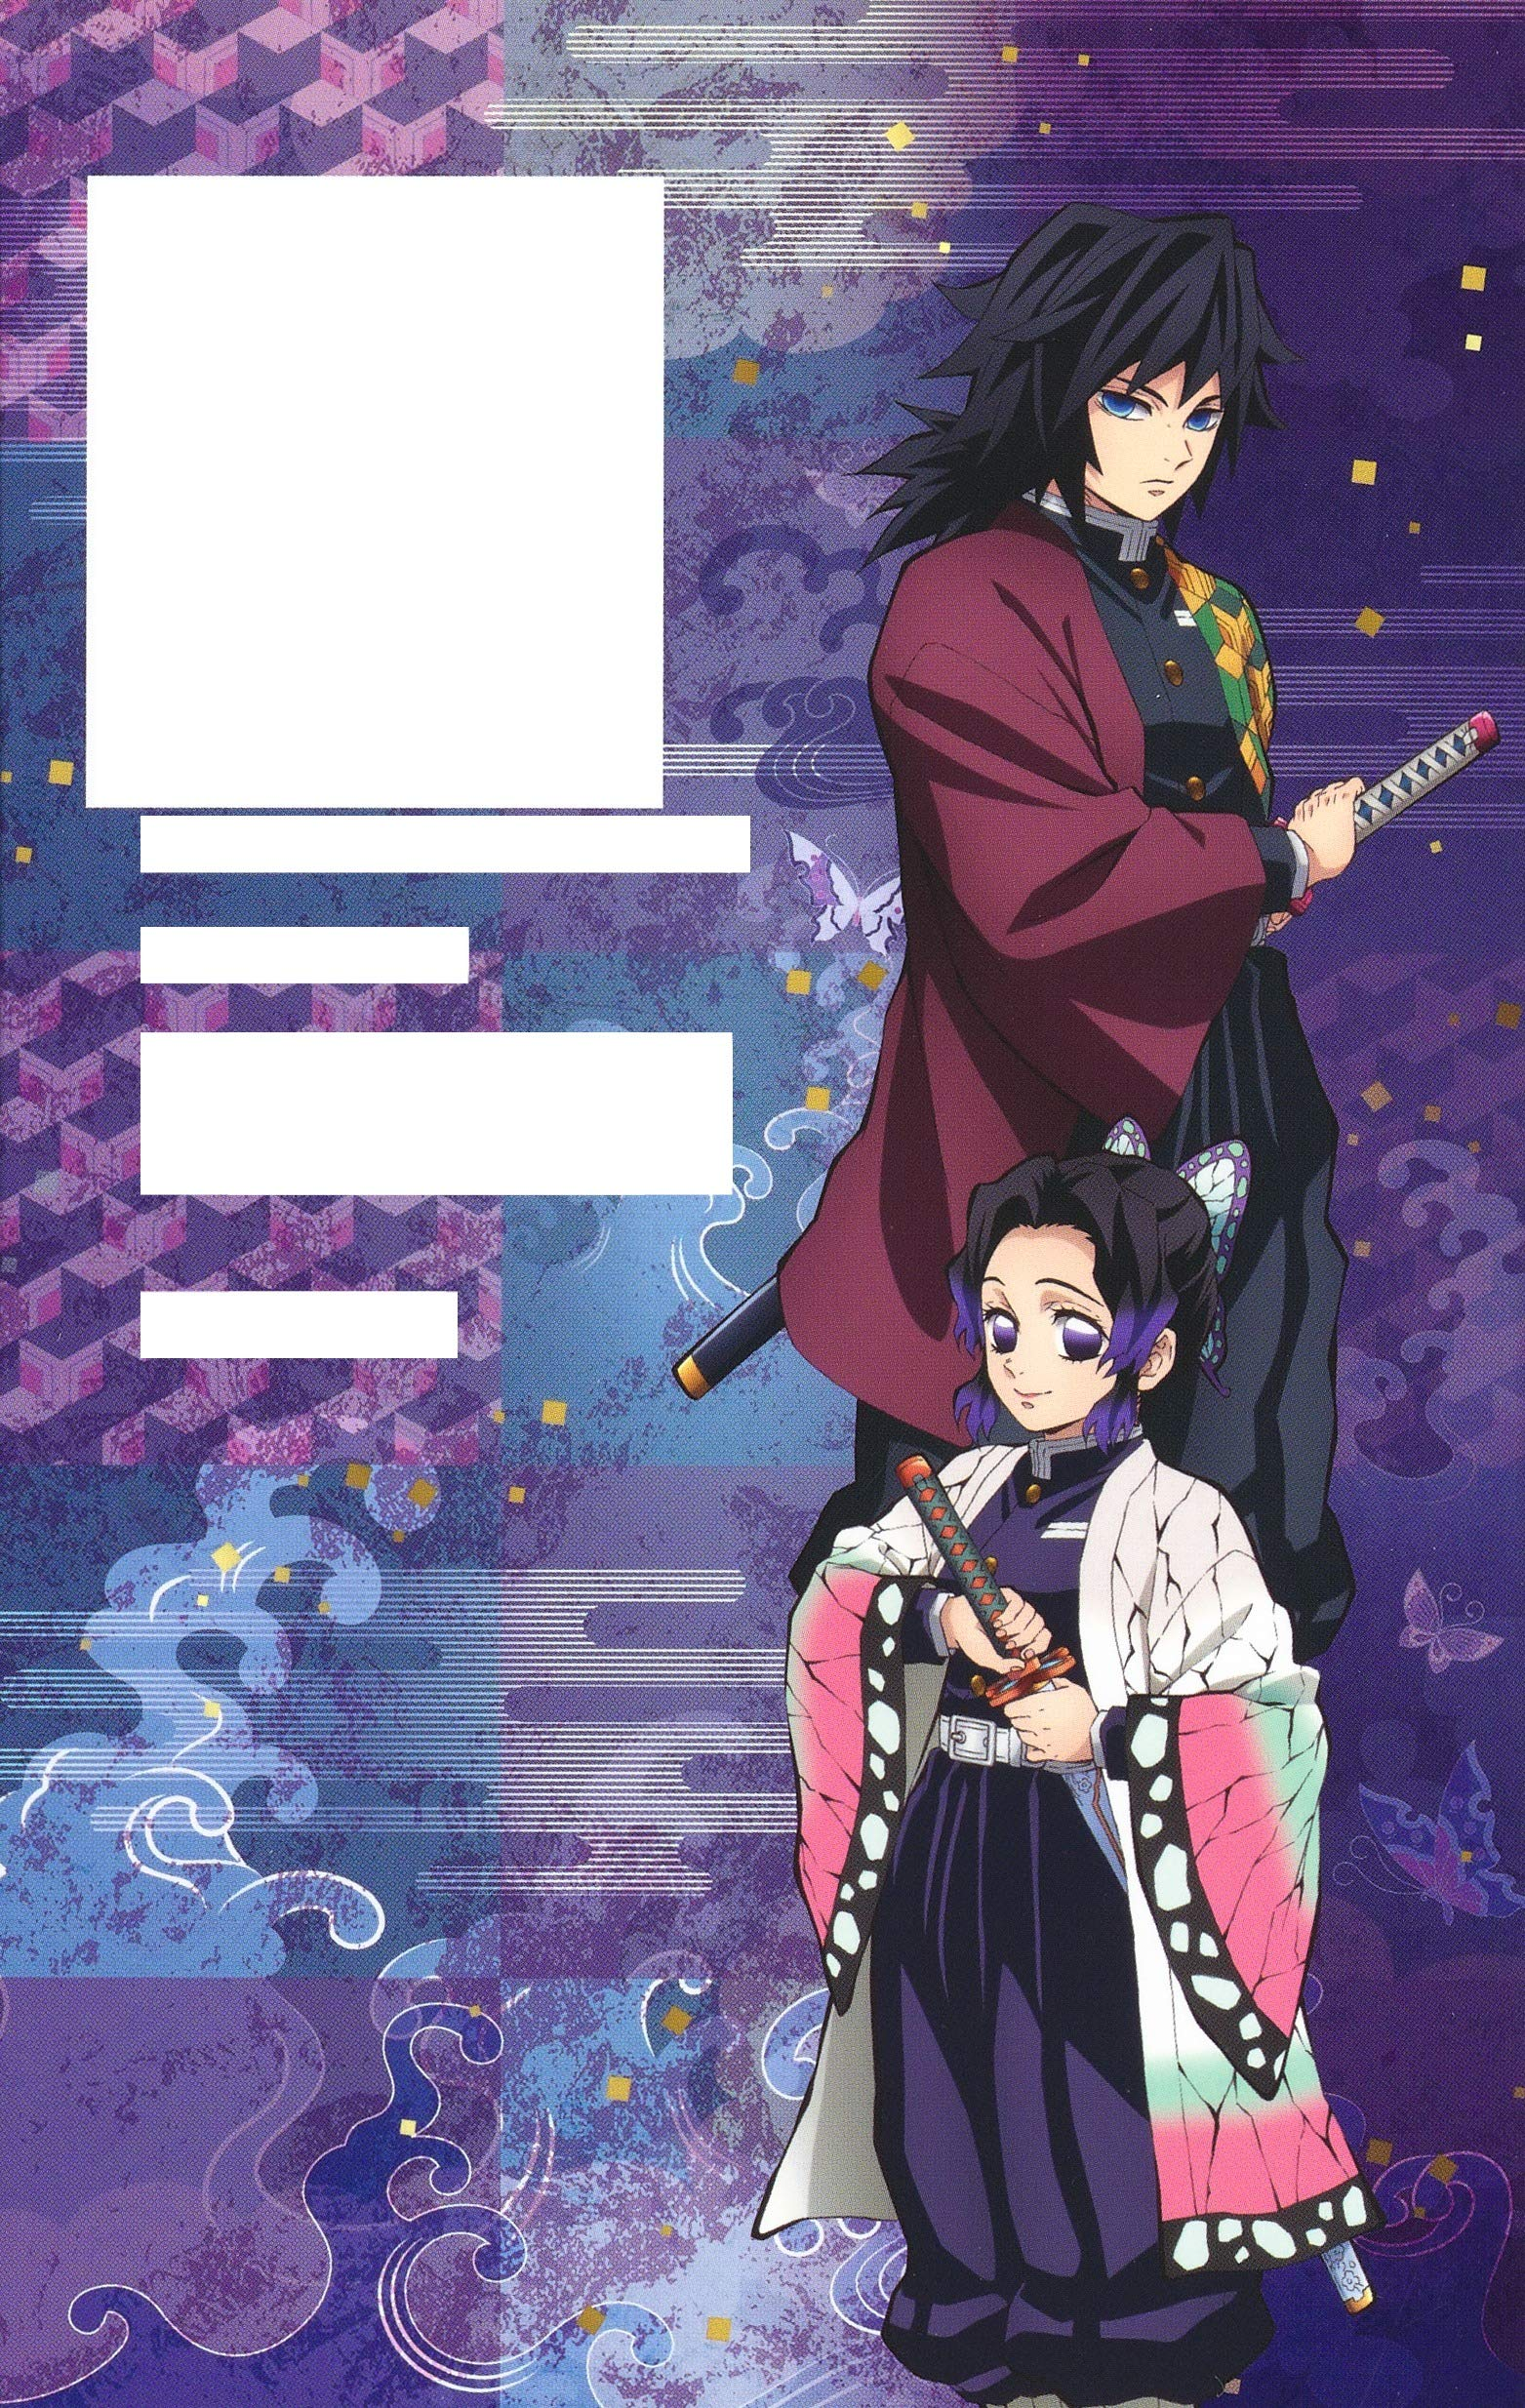 Kimetsu no Yaiba Official Character Book Volume 3, Kimetsu no Yaiba Wiki